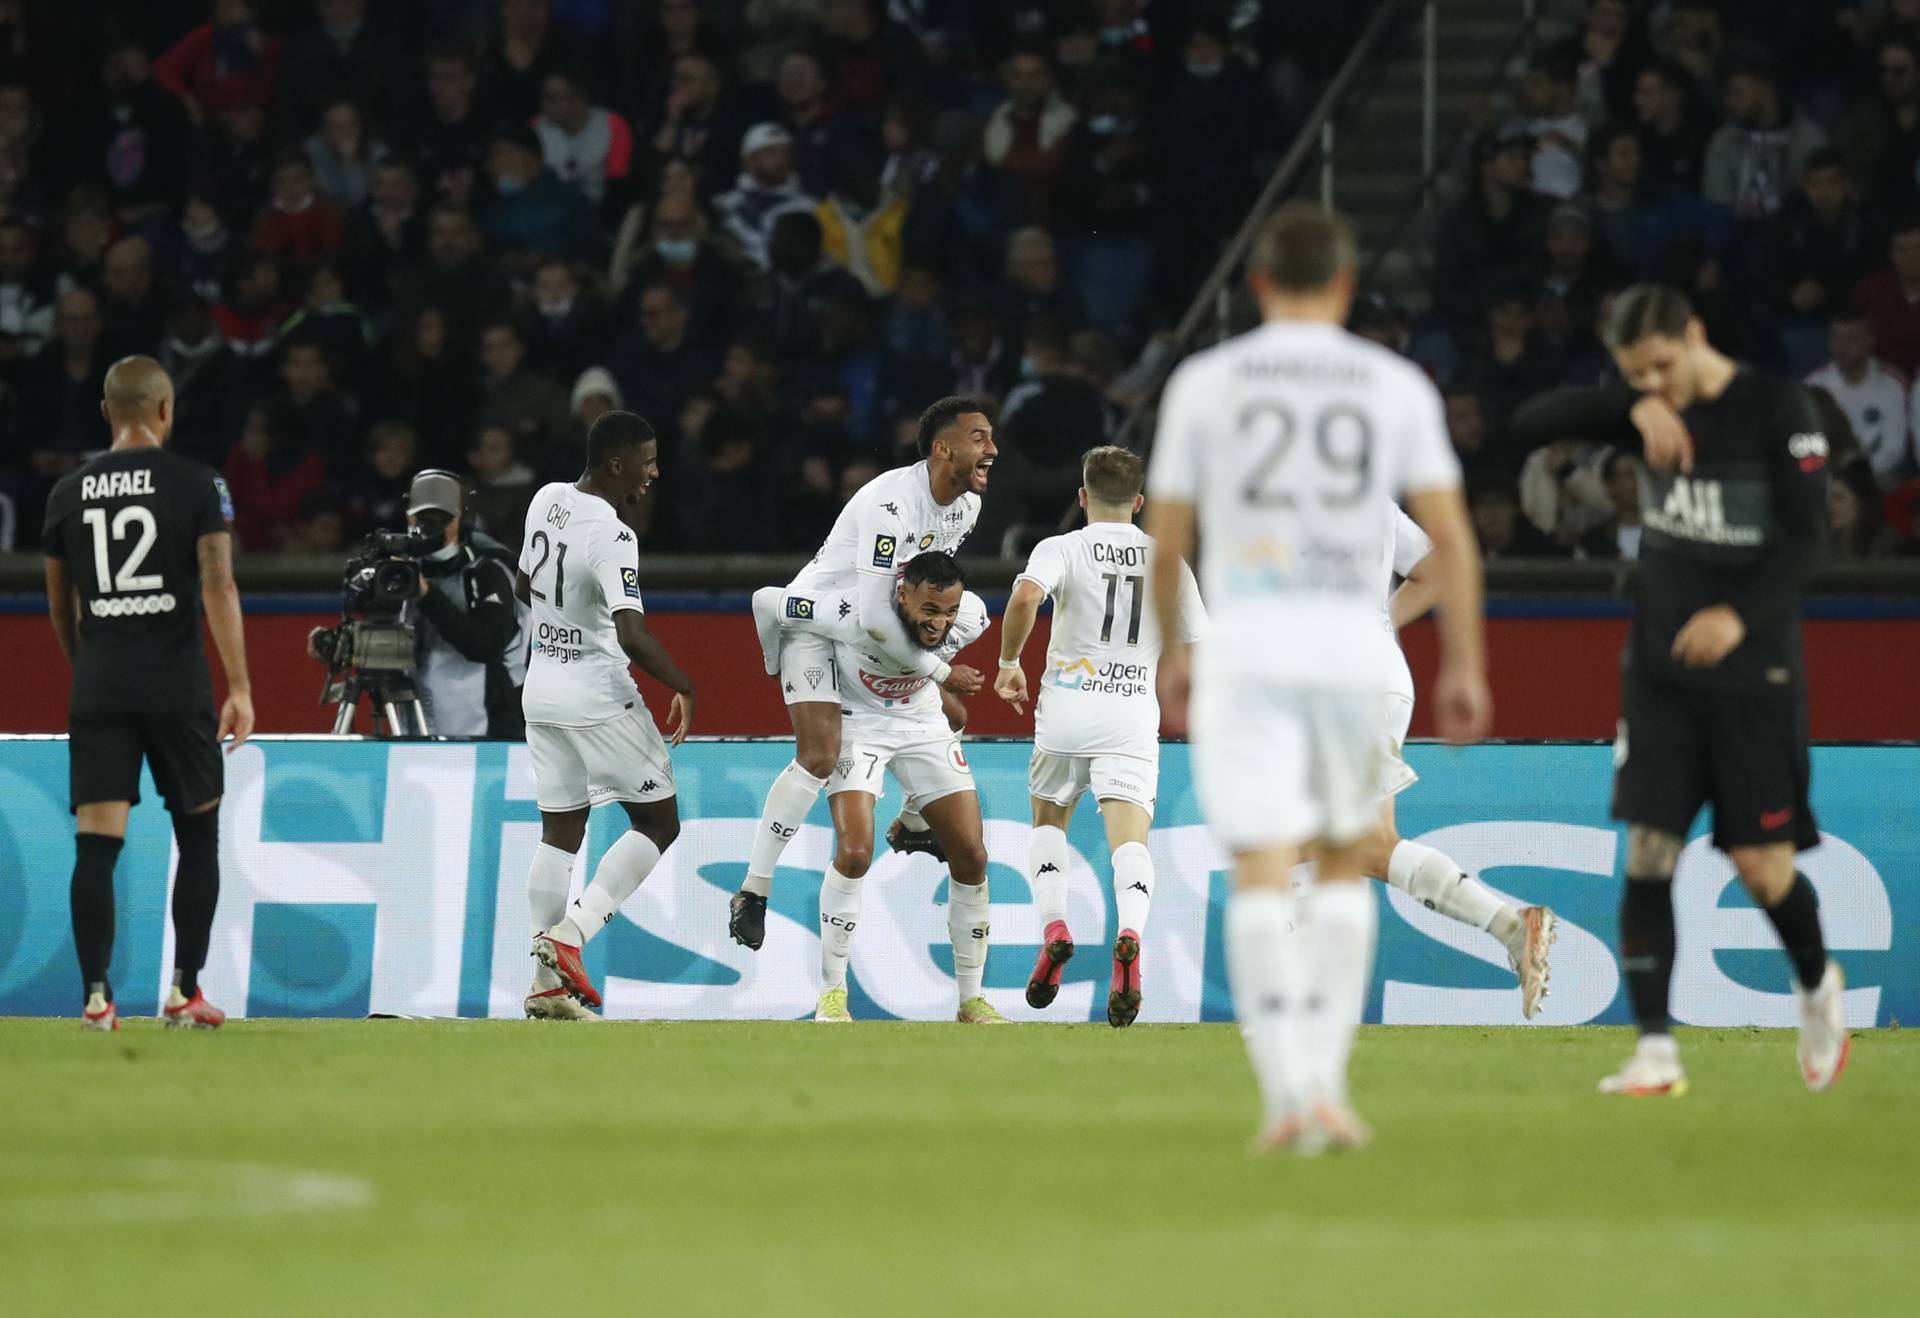 Ligue 1 - Paris St Germain v Angers